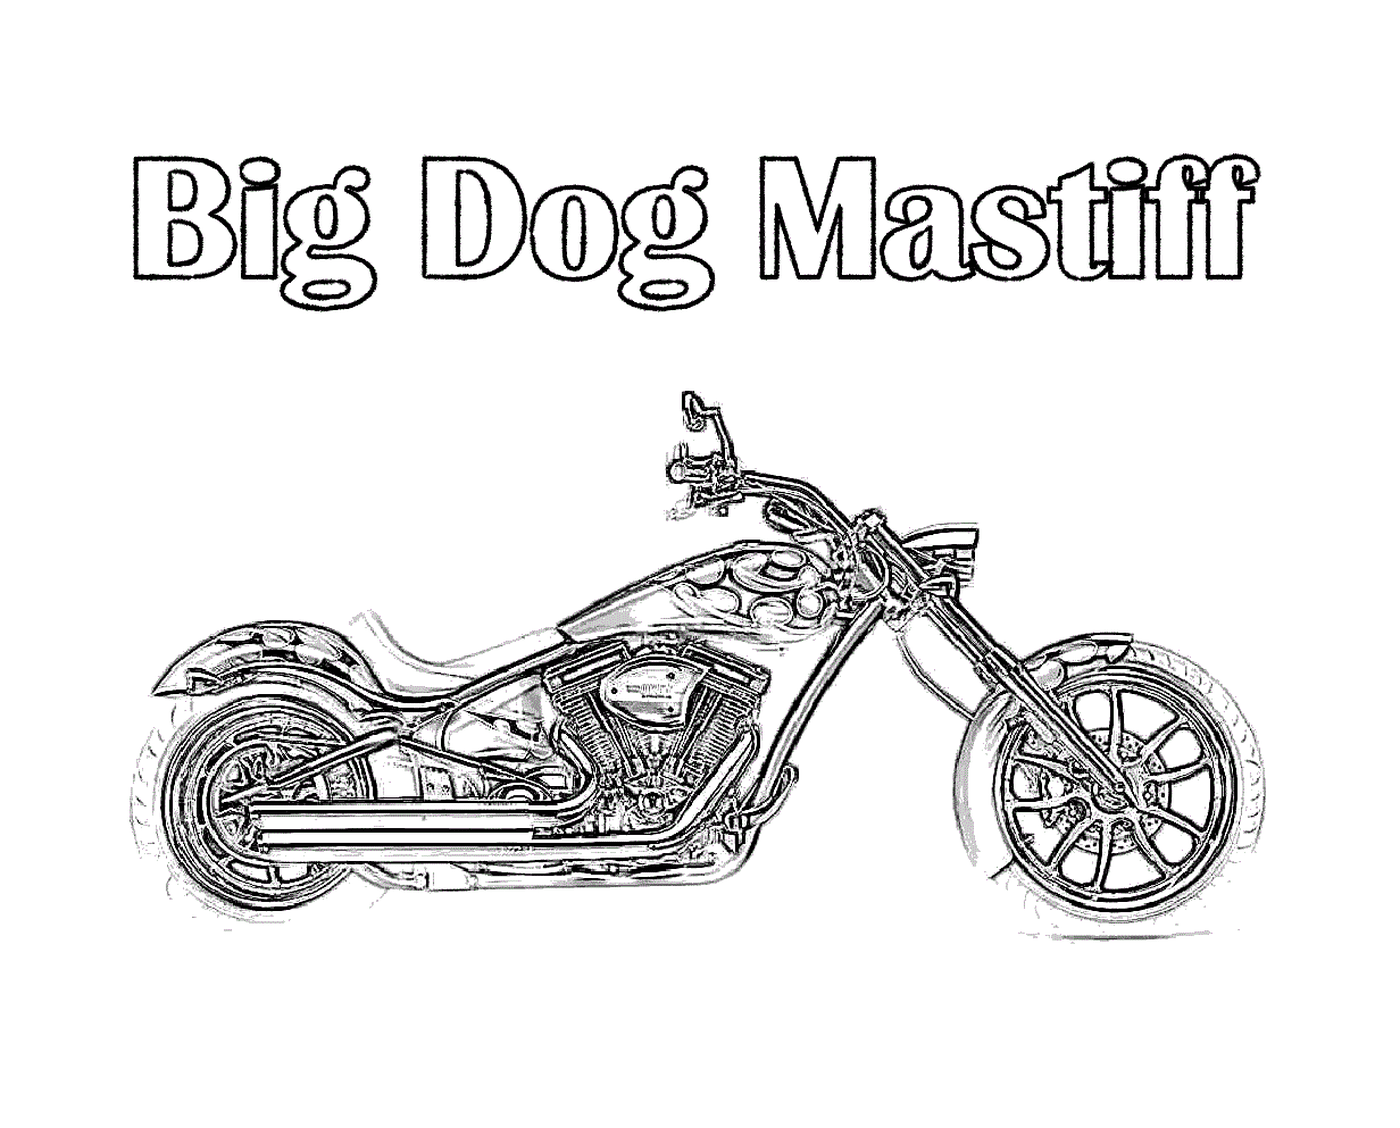  Grande cane in motocicletta 